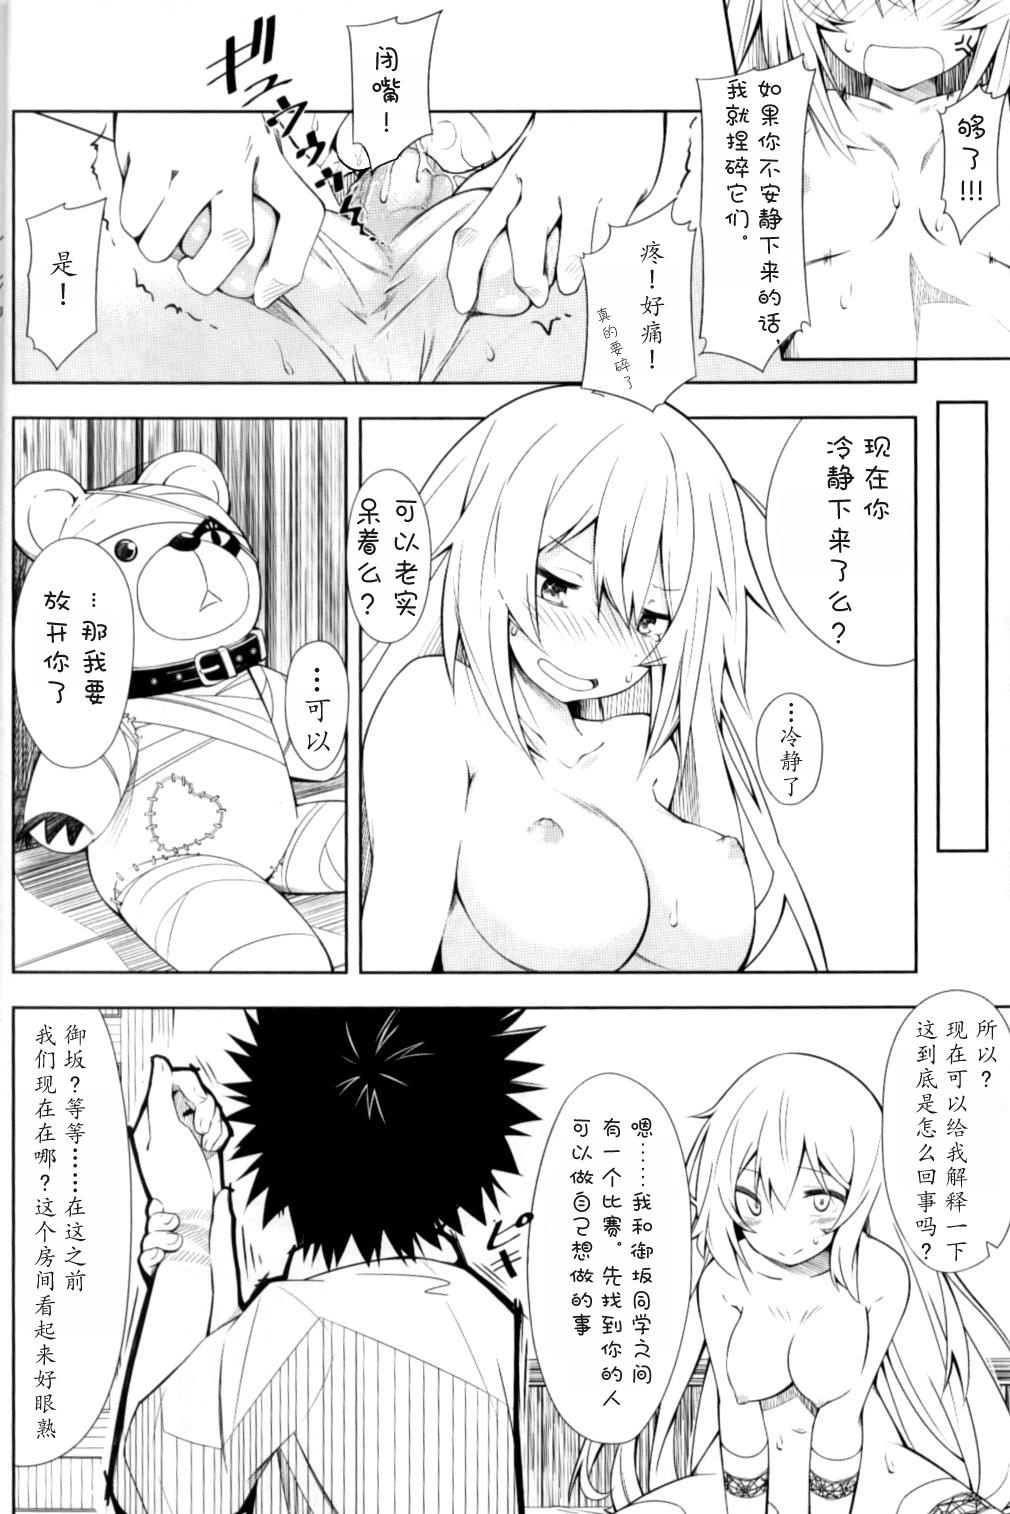 Anal Licking Shokuhou-san no 5x0 - Toaru kagaku no railgun | a certain scientific railgun Asia - Page 8